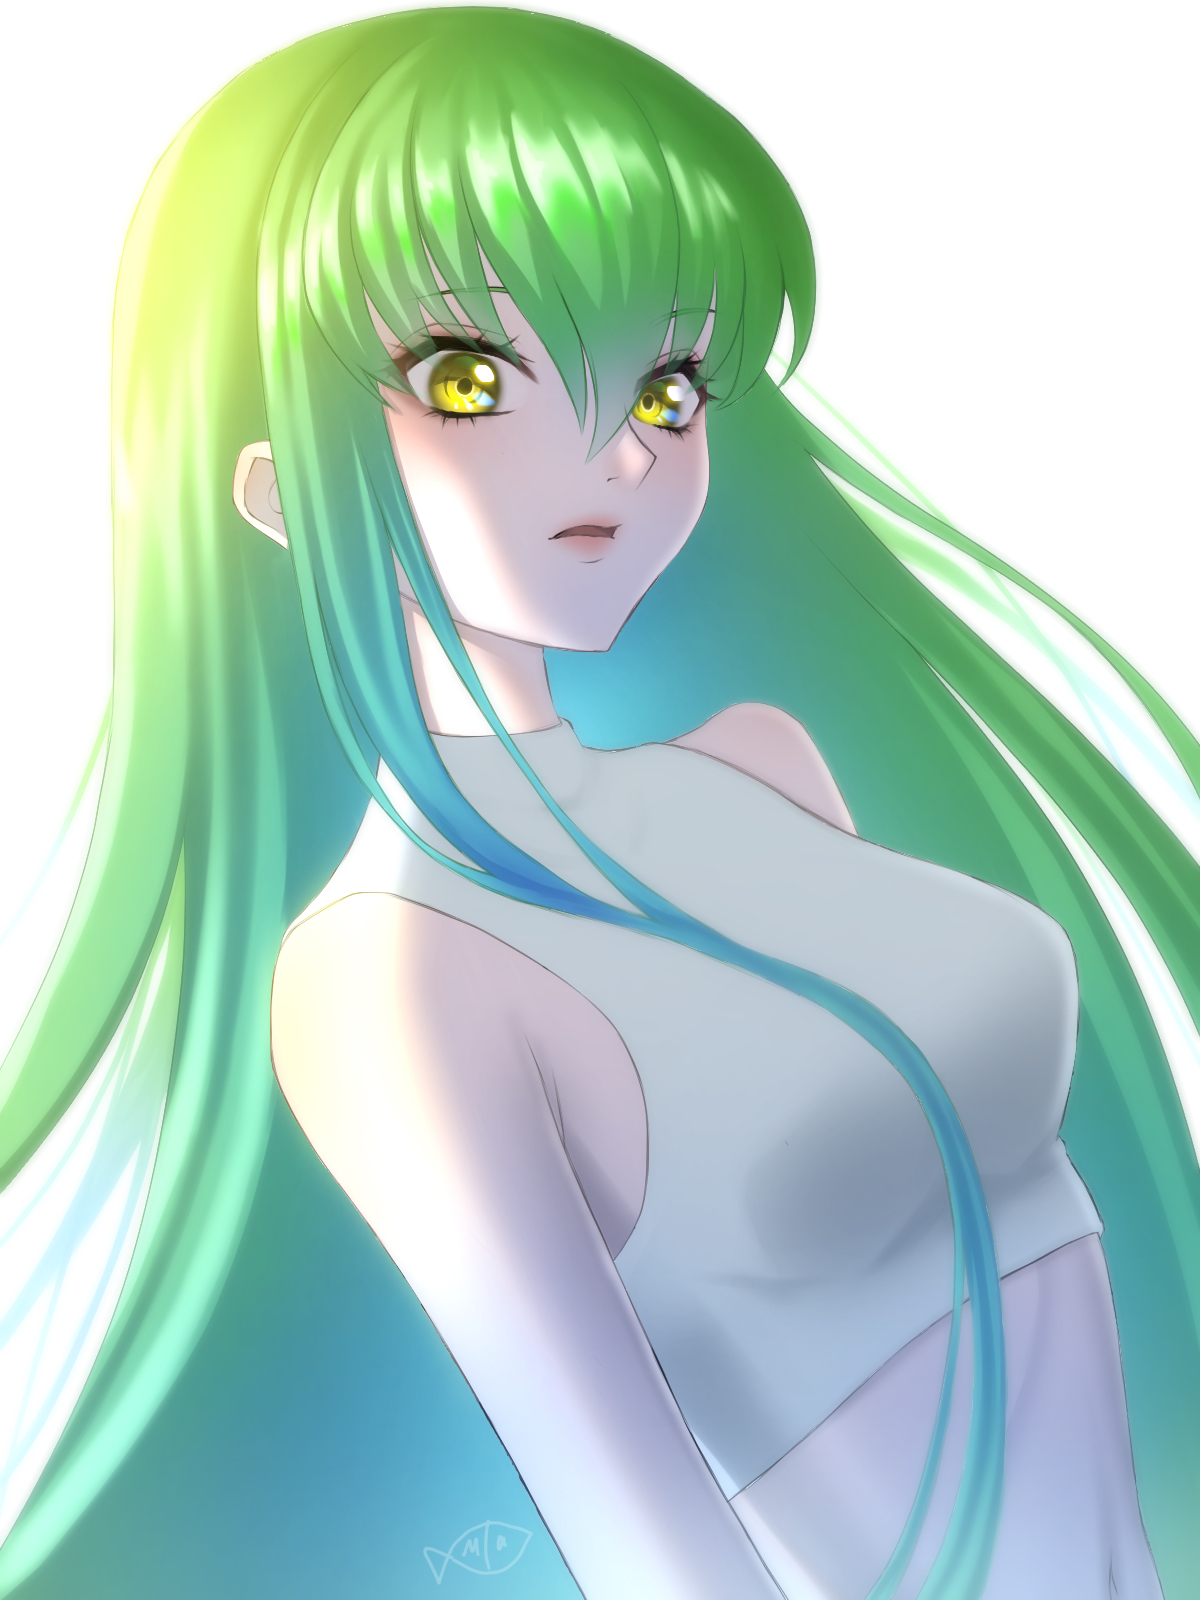 Anime Anime Girls Code Geass C C Code Geass Long Hair Green Hair Solo Artwork Digital Art Fan Art 1200x1600